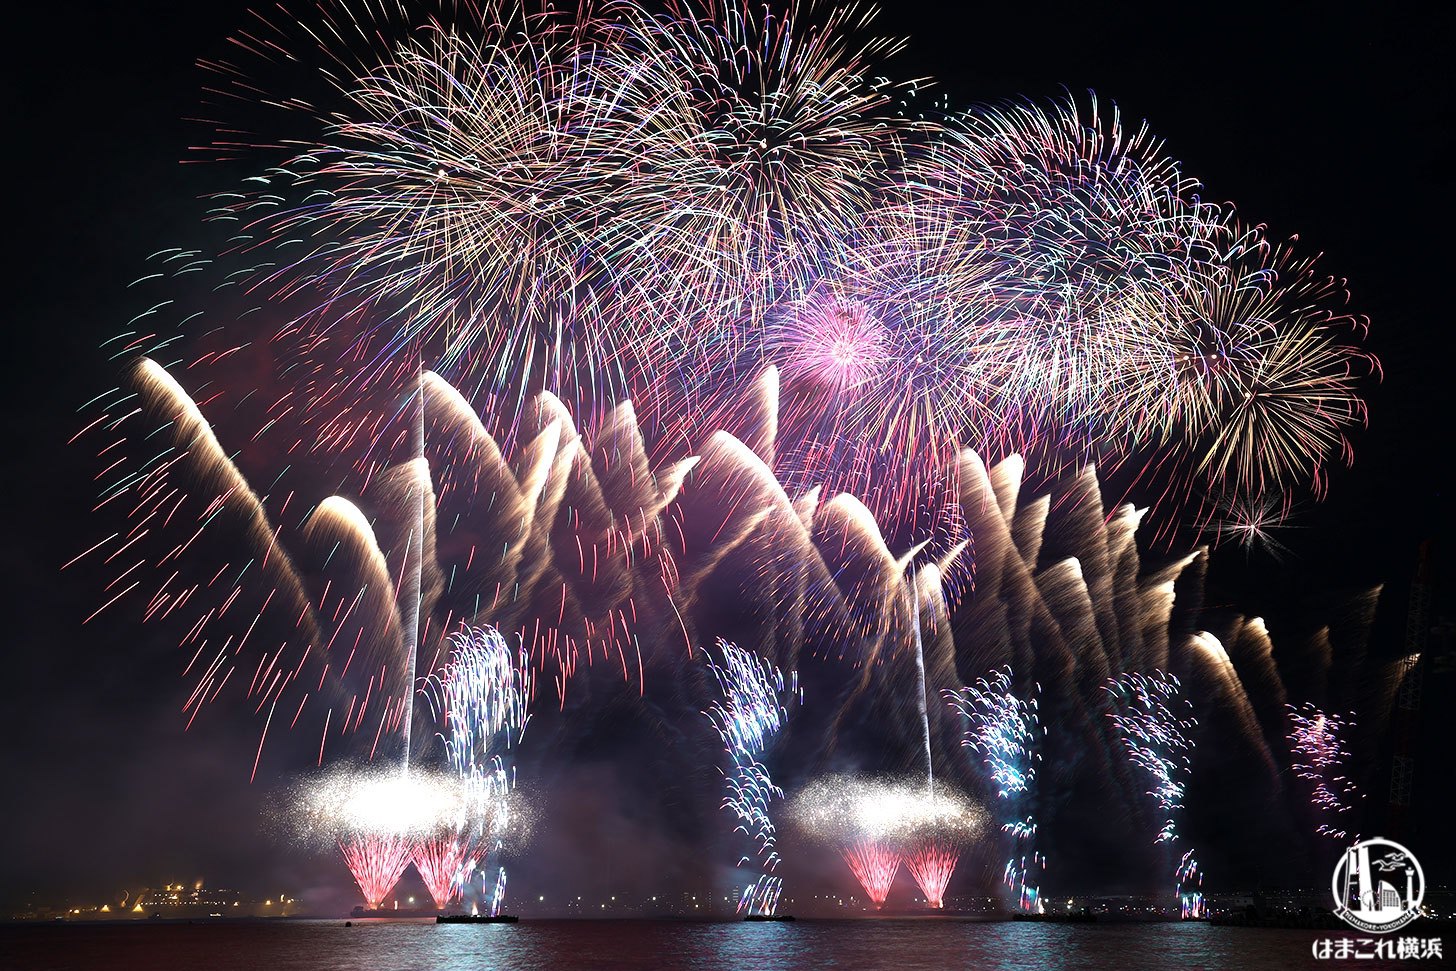 みなとみらいスマートフェスティバルの打ち上げ花火に酔いしれる！横浜の夜空輝く25分間の絶景